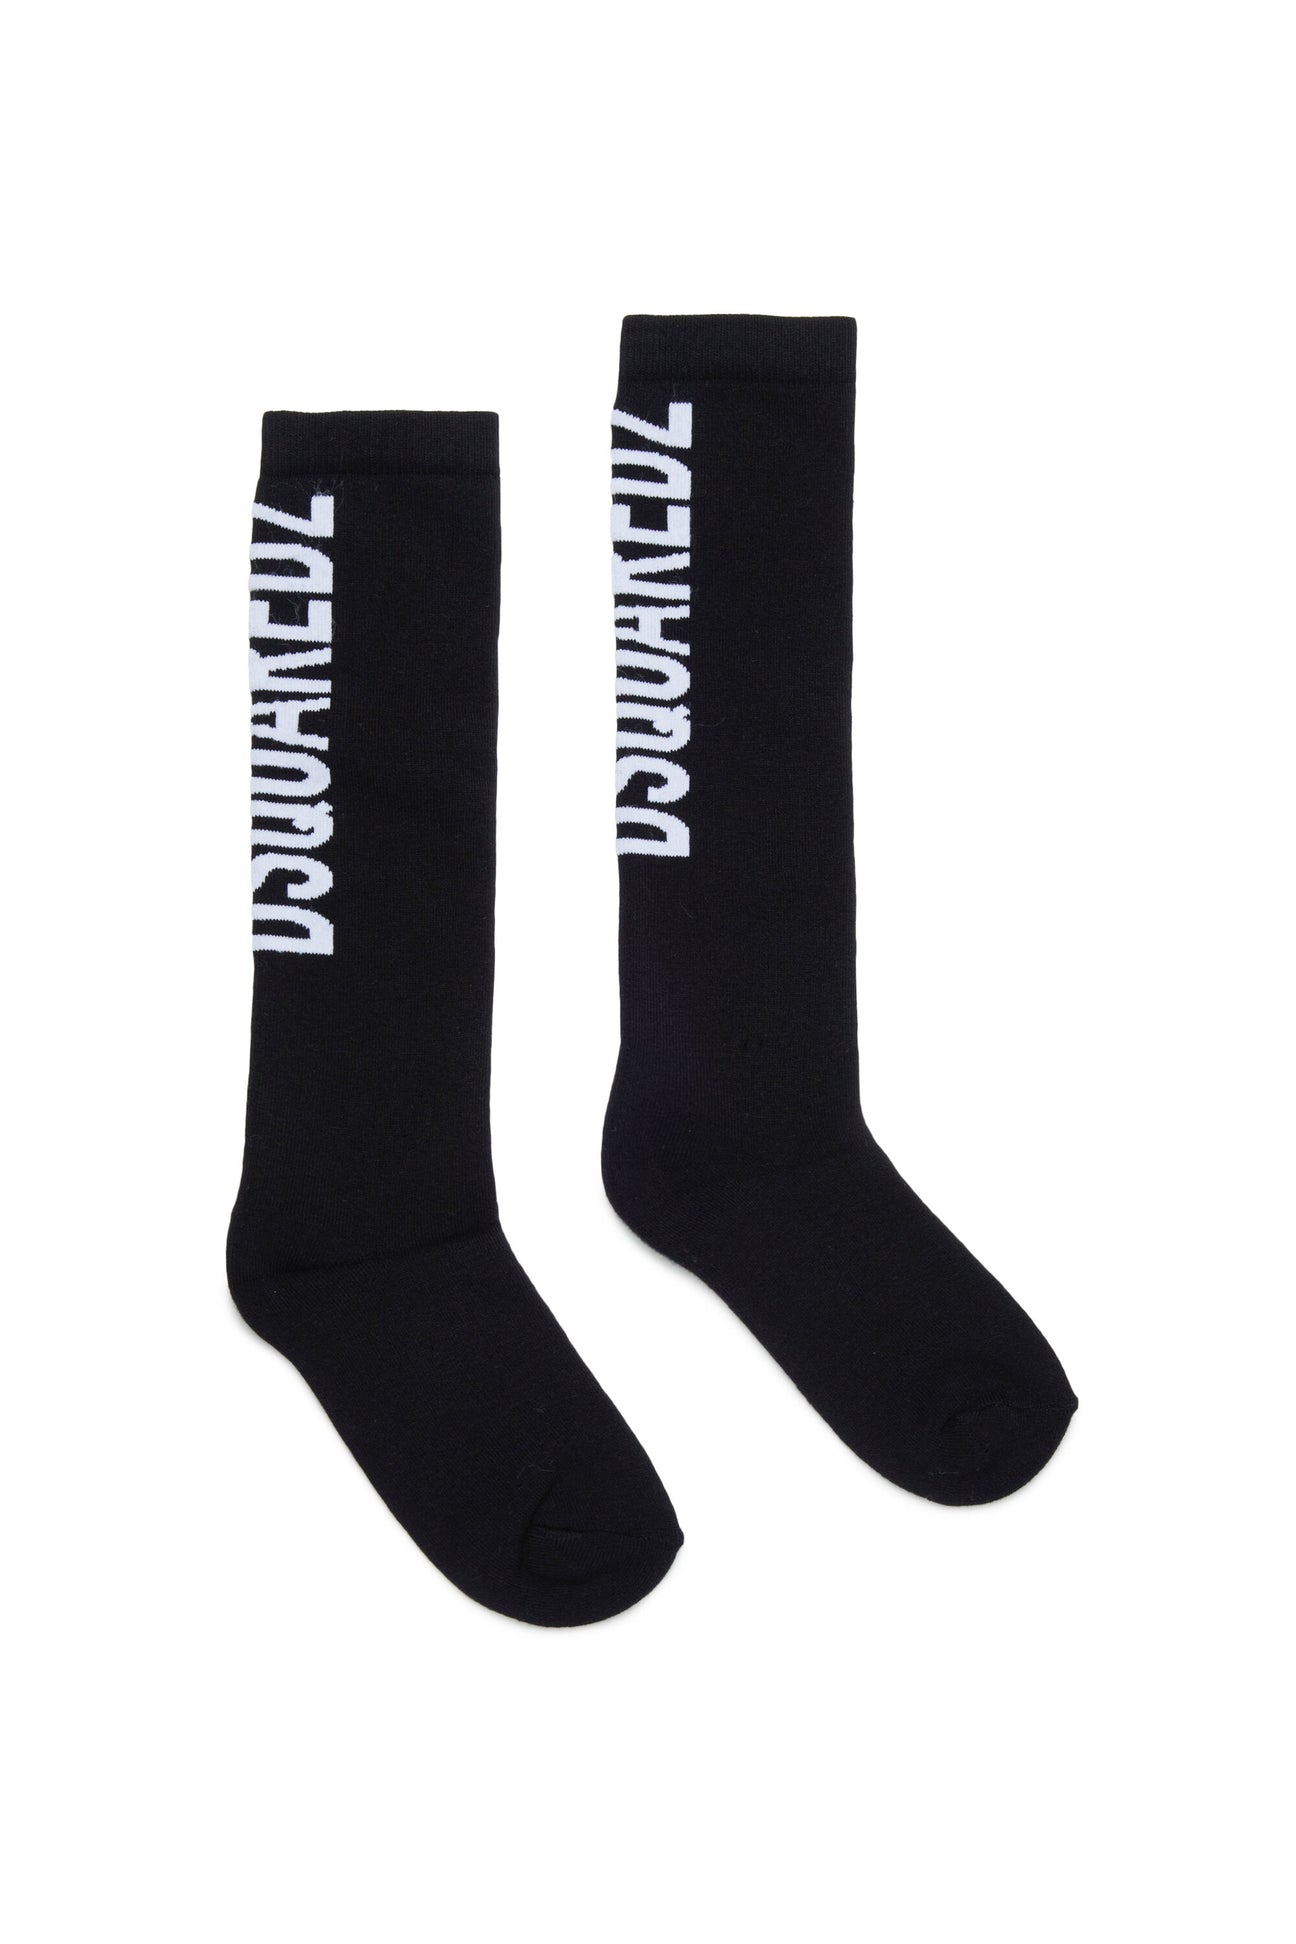 Branded socks 